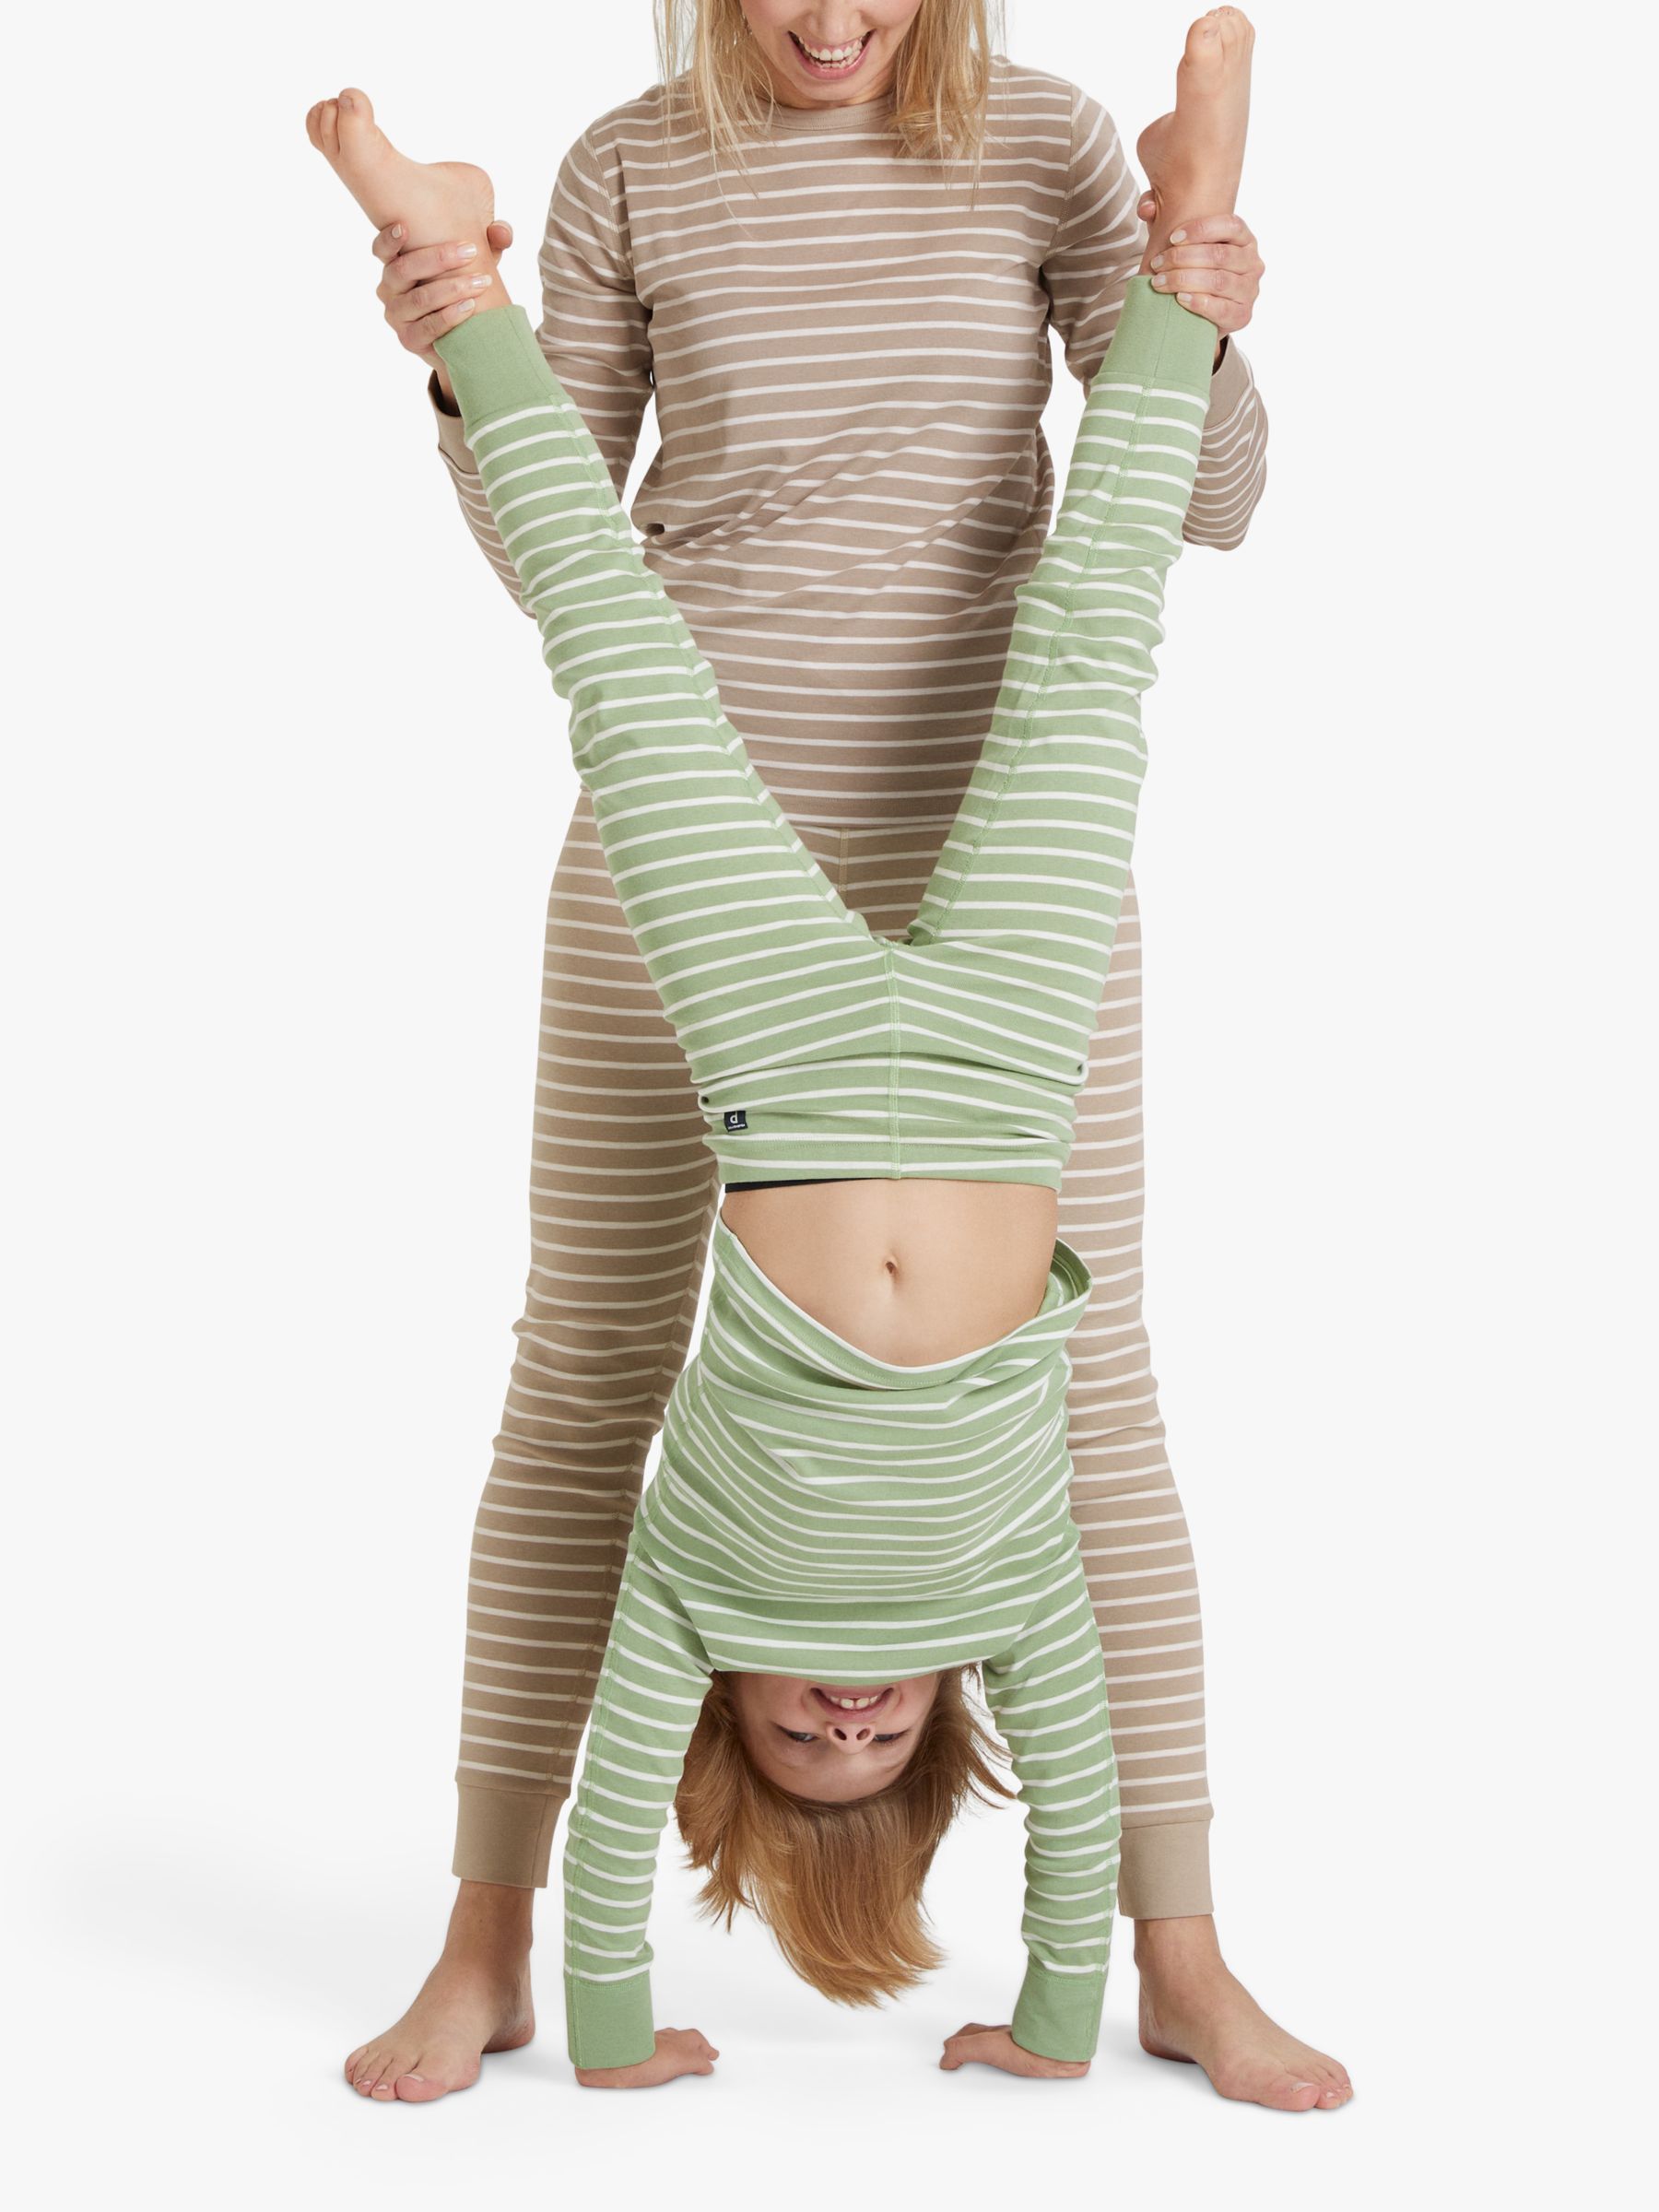 Polarn O. Pyret Kids' GOTS Organic Cotton Stripe Leggings, Green, 12-18 months